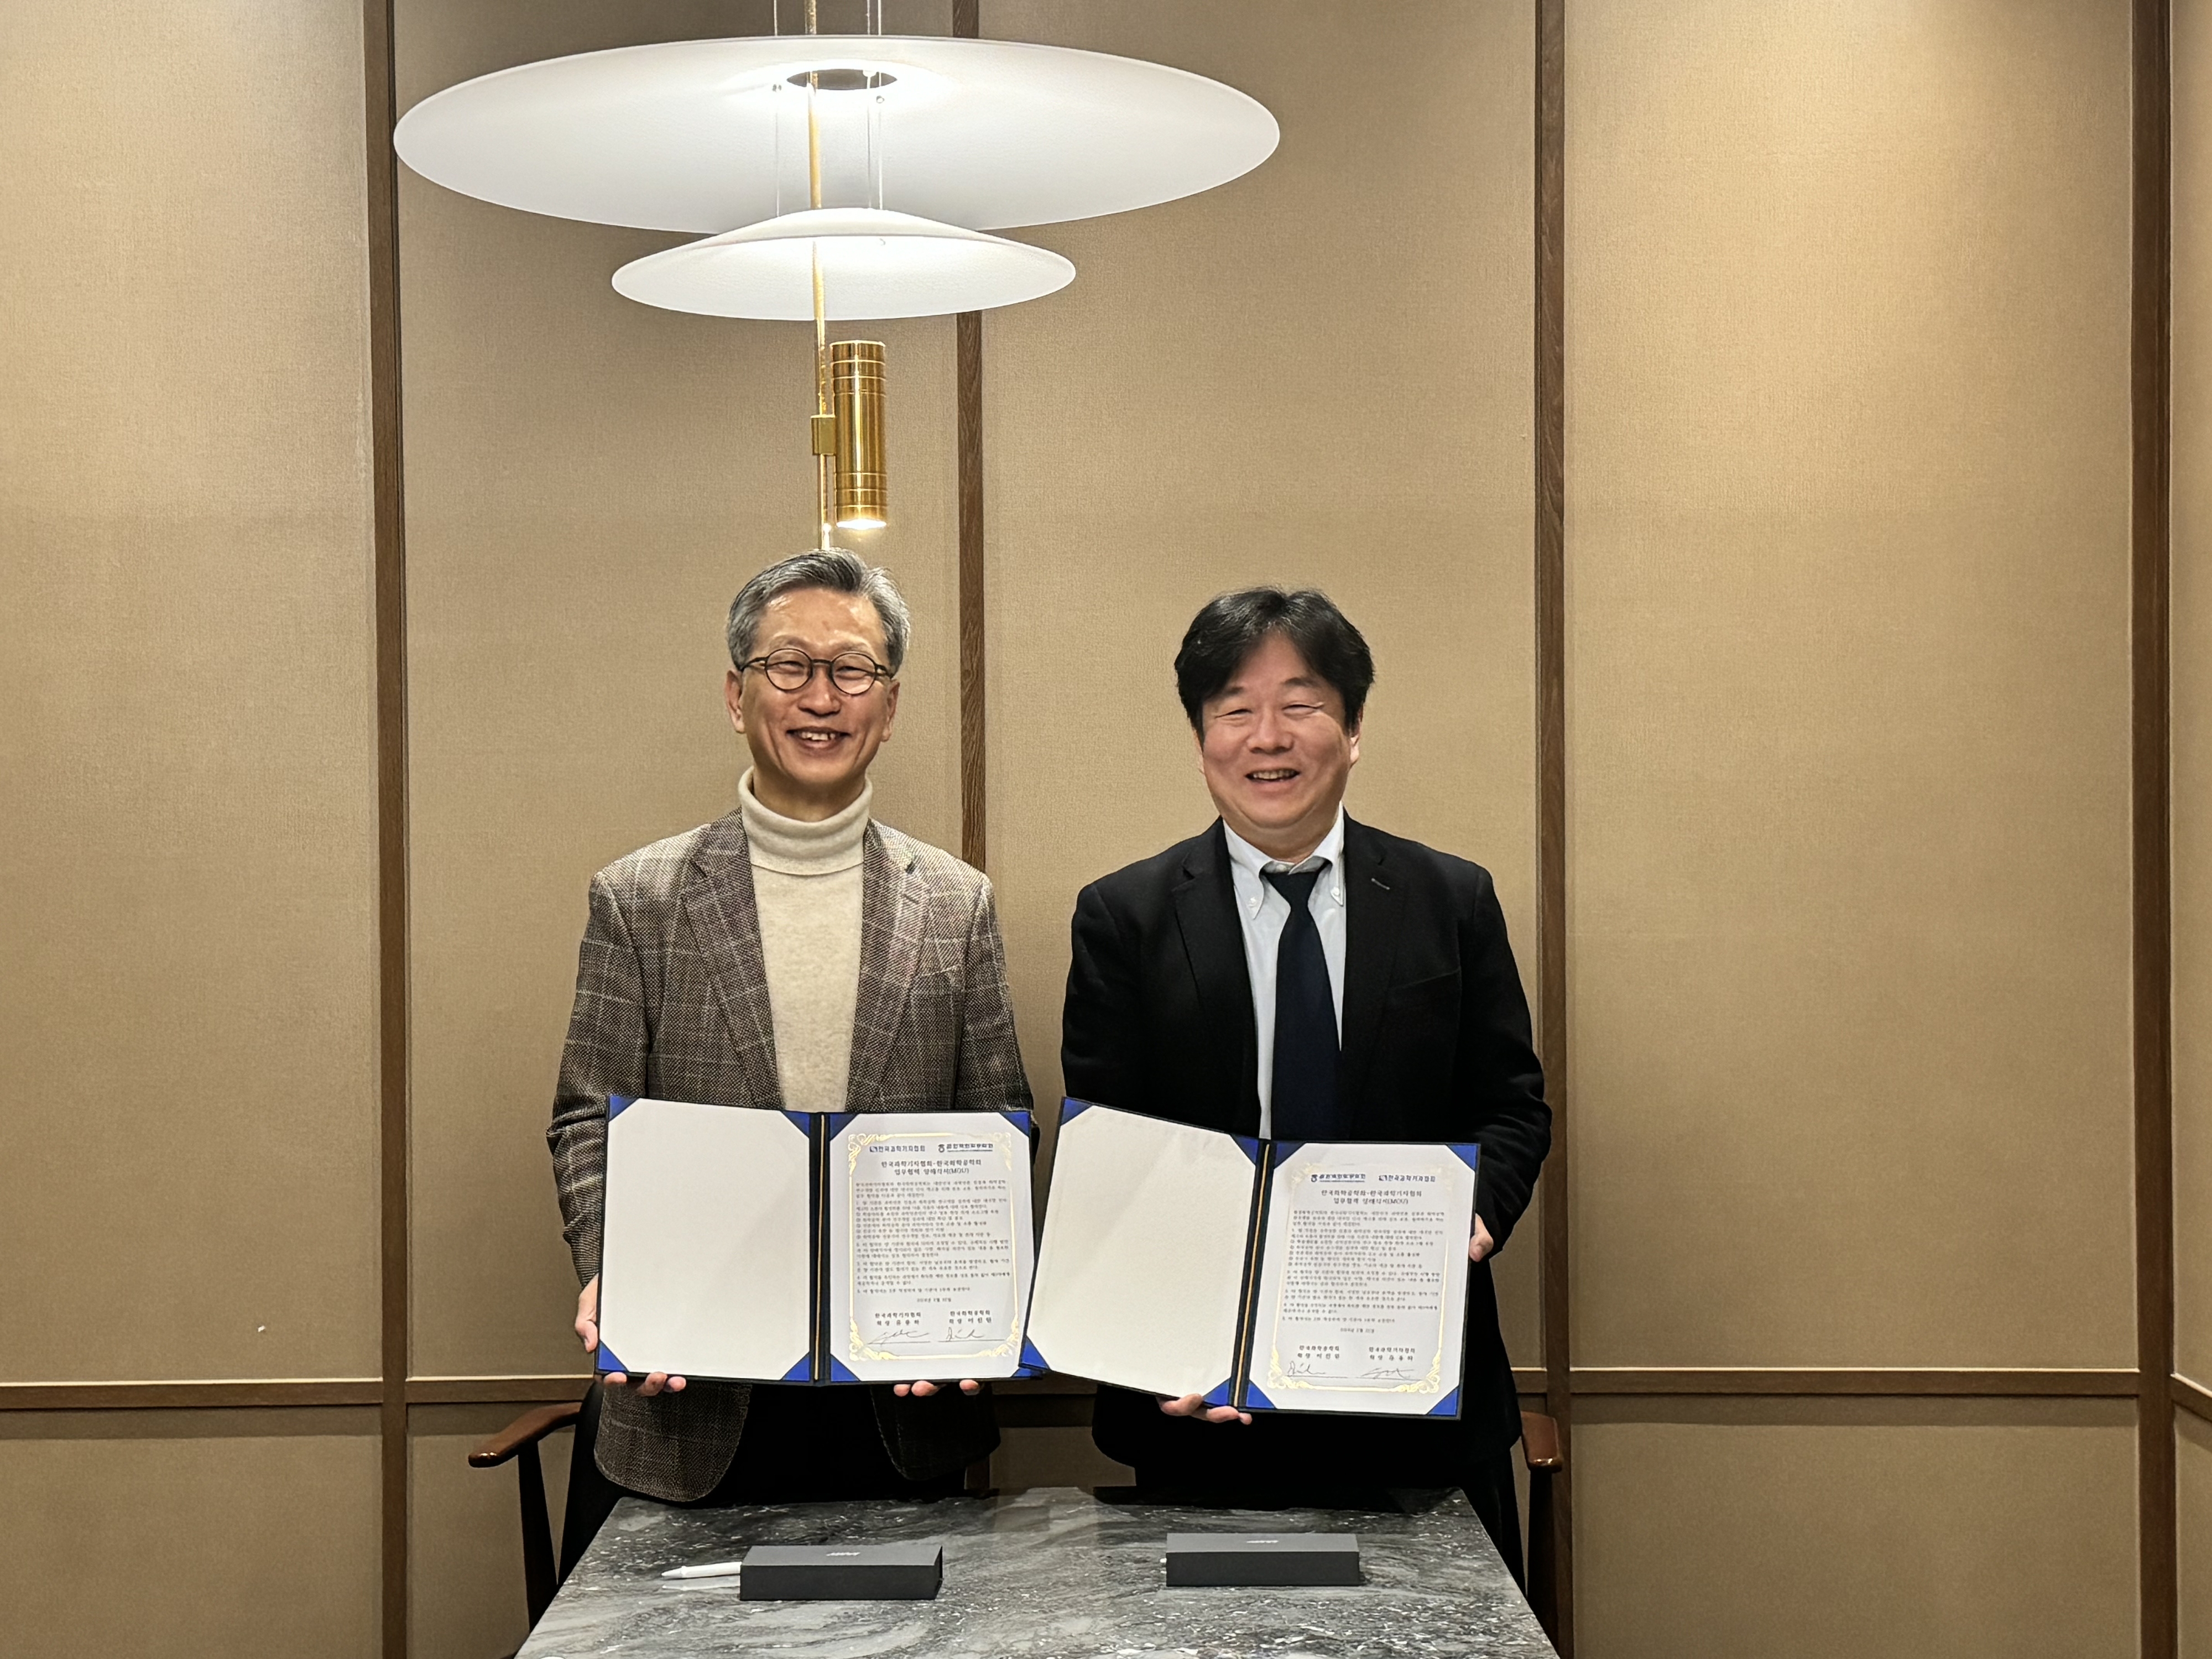 이진원(왼쪽) 한국화학공학회 회장과 유용하 한국과학기자협회 회장이 22일 업무협약을 맺고 기념촬영을 하고 있다.   한국과학기자협회 제공